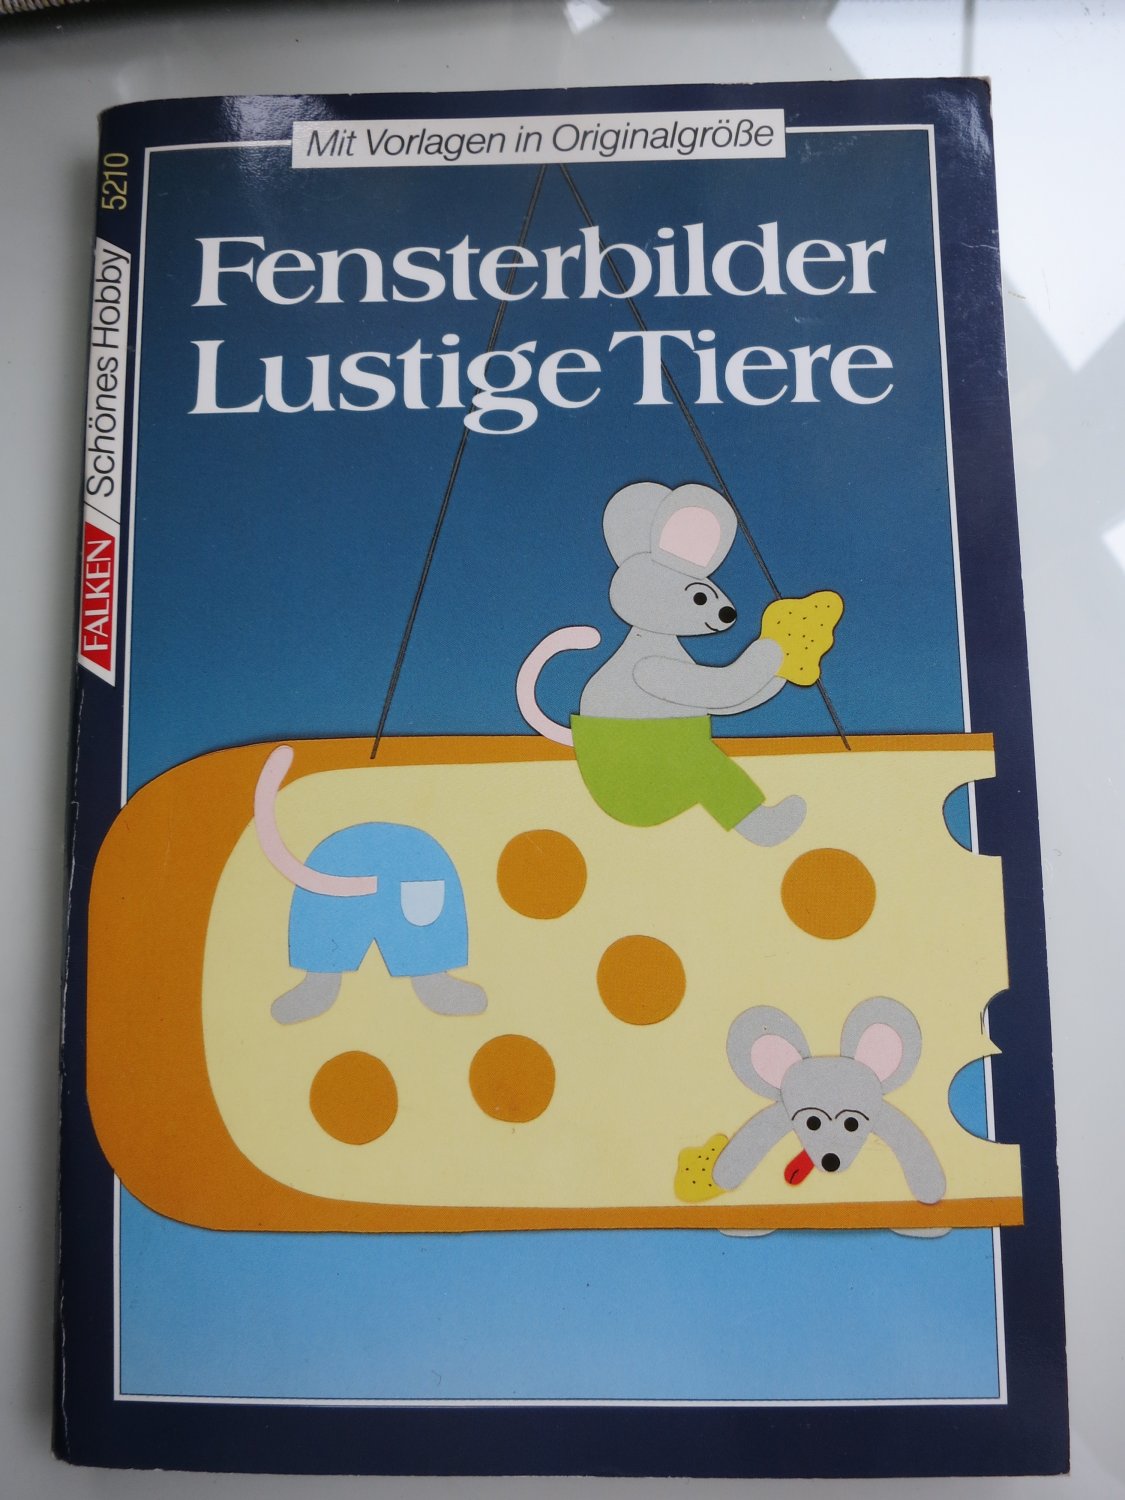 Fensterbilder Lustige Tiere Mit Vorlagen In Originalgrosse Frauke Michalsky Buch Erstausgabe Kaufen A02mkhtr01zzq